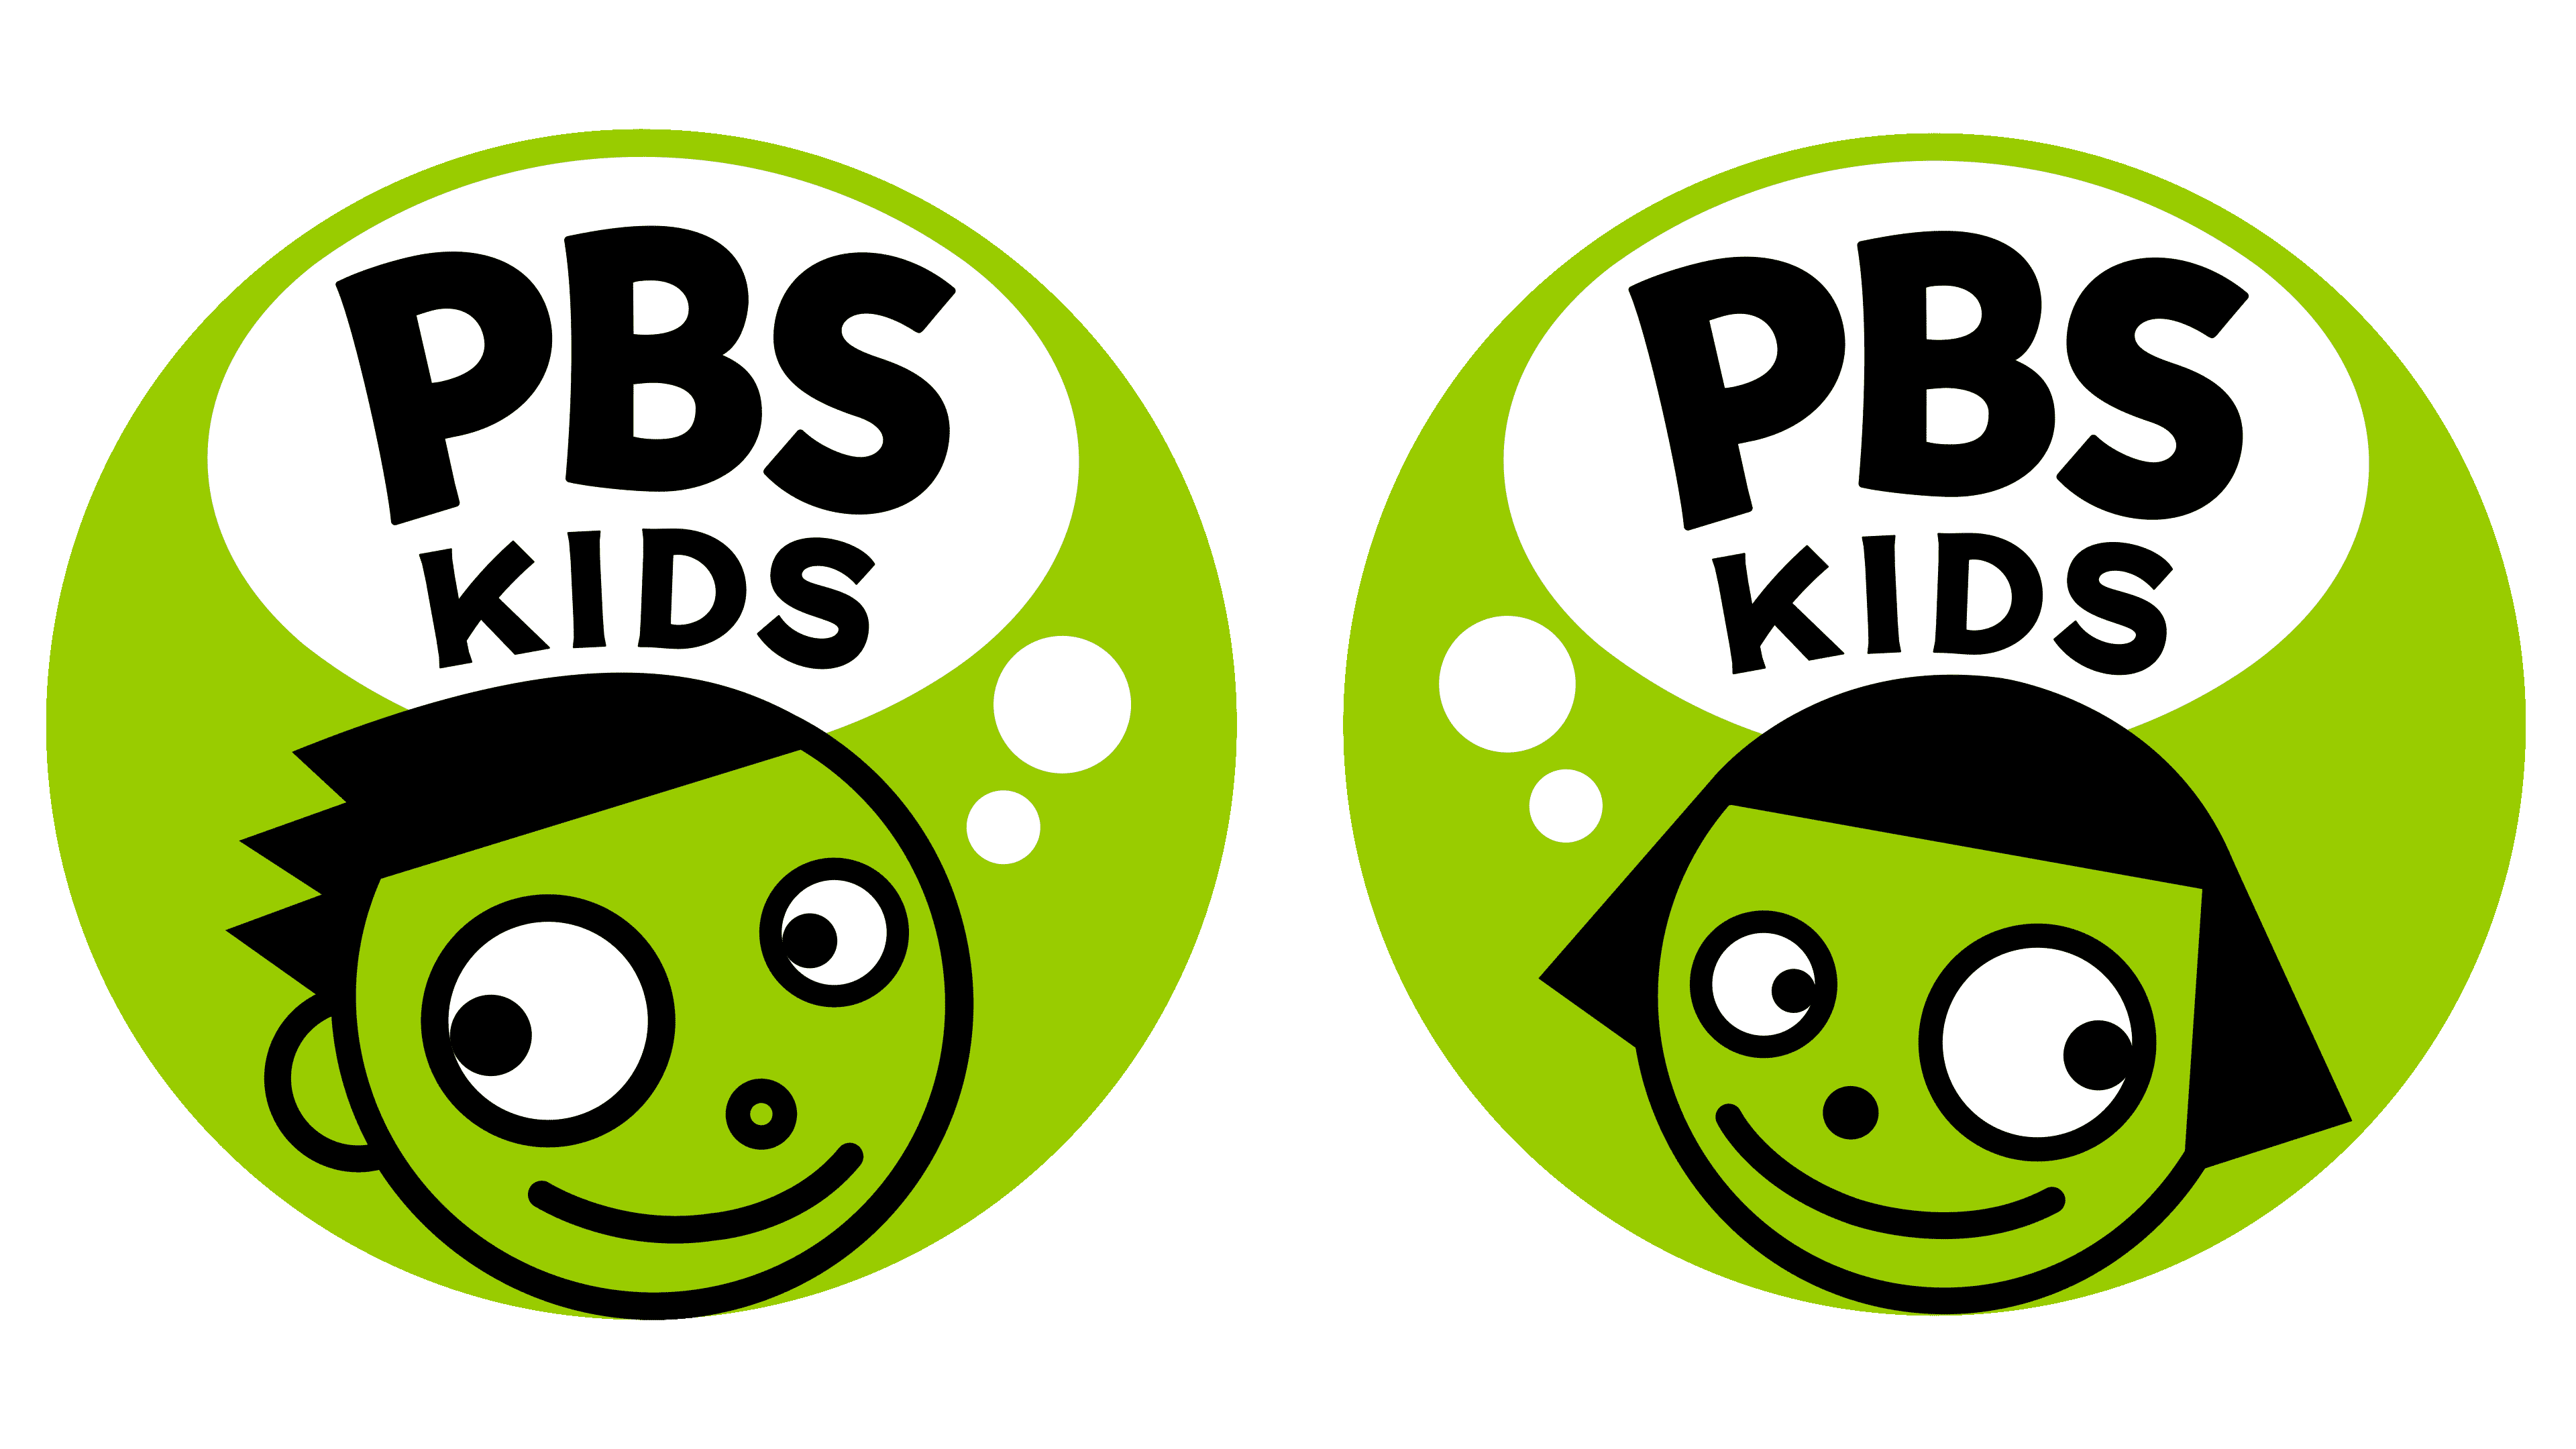 pbs kids 2008